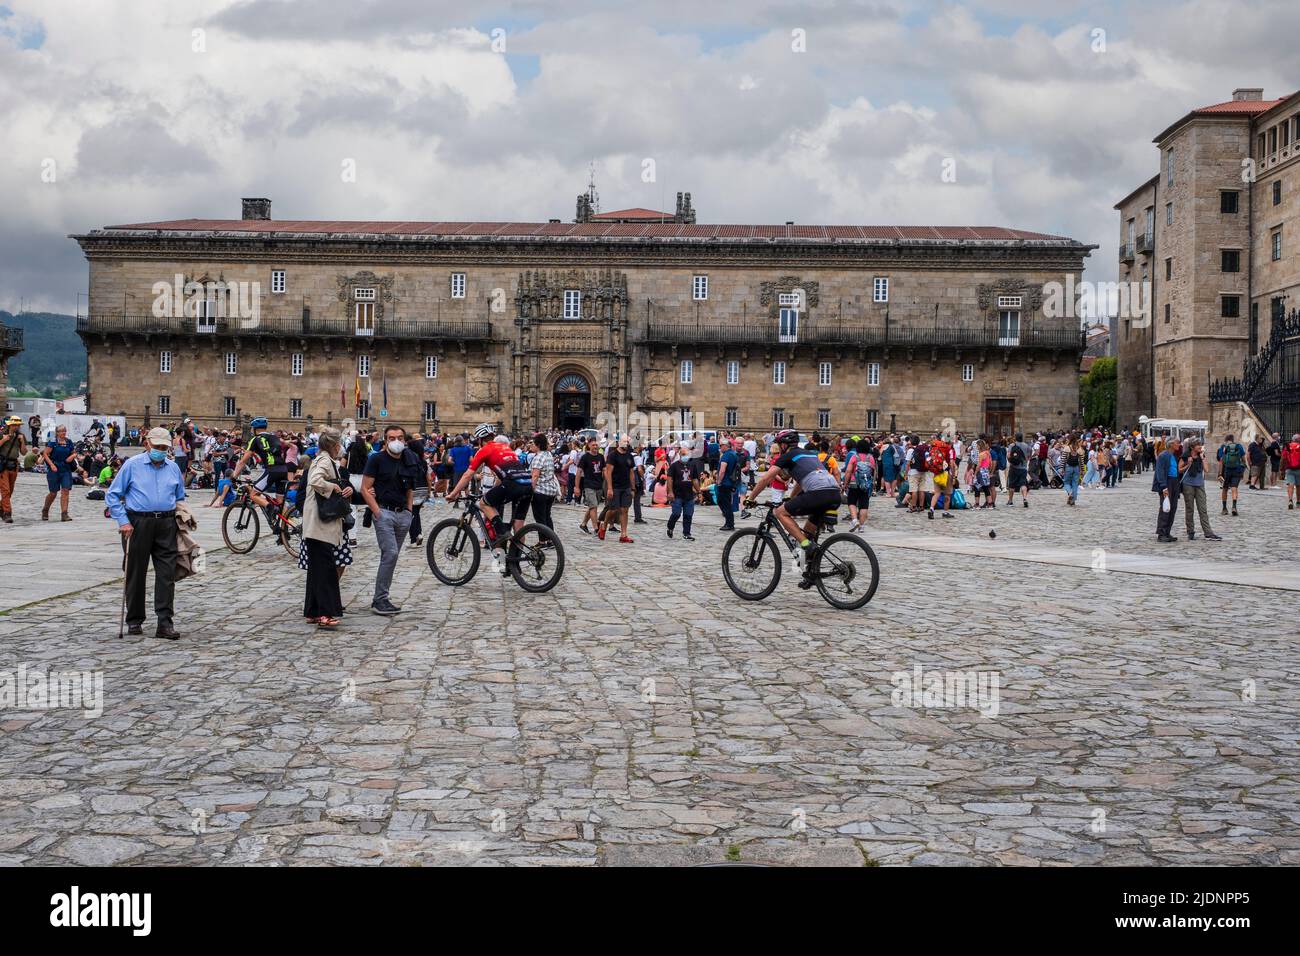 Spain, Santiago de Compostela, Galicia. Pilgrims in the Praza do Obradoiro (Plaza de Obradoiro), Hostal de los Reis Catolicos, in background. Stock Photo